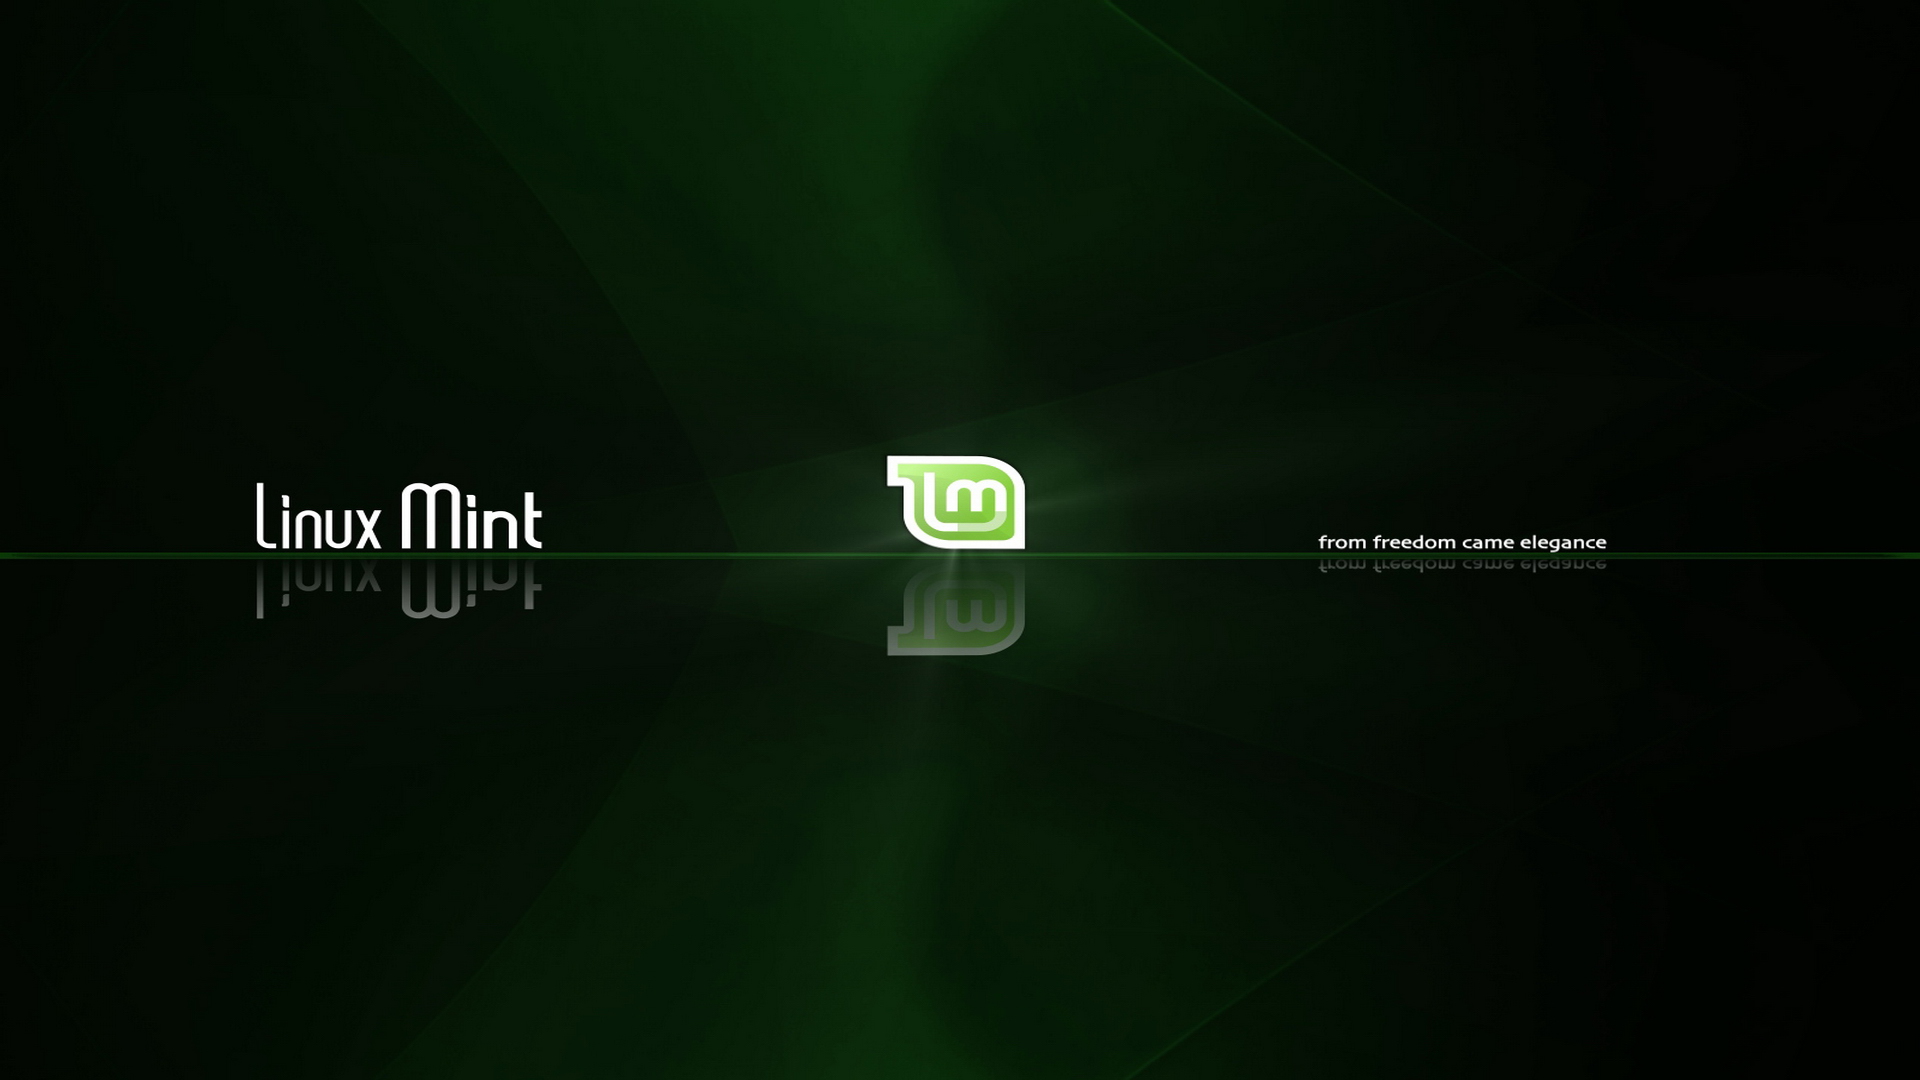 Hình nền desktop của Linux Mint là một ẩn số đầy màu sắc cho người dùng thích tìm kiếm. Với đa dạng các hình nền từ thiên nhiên đến các hiện đại trừu tượng, bạn sẽ tìm thấy hình ảnh phù hợp cho máy tính của mình.